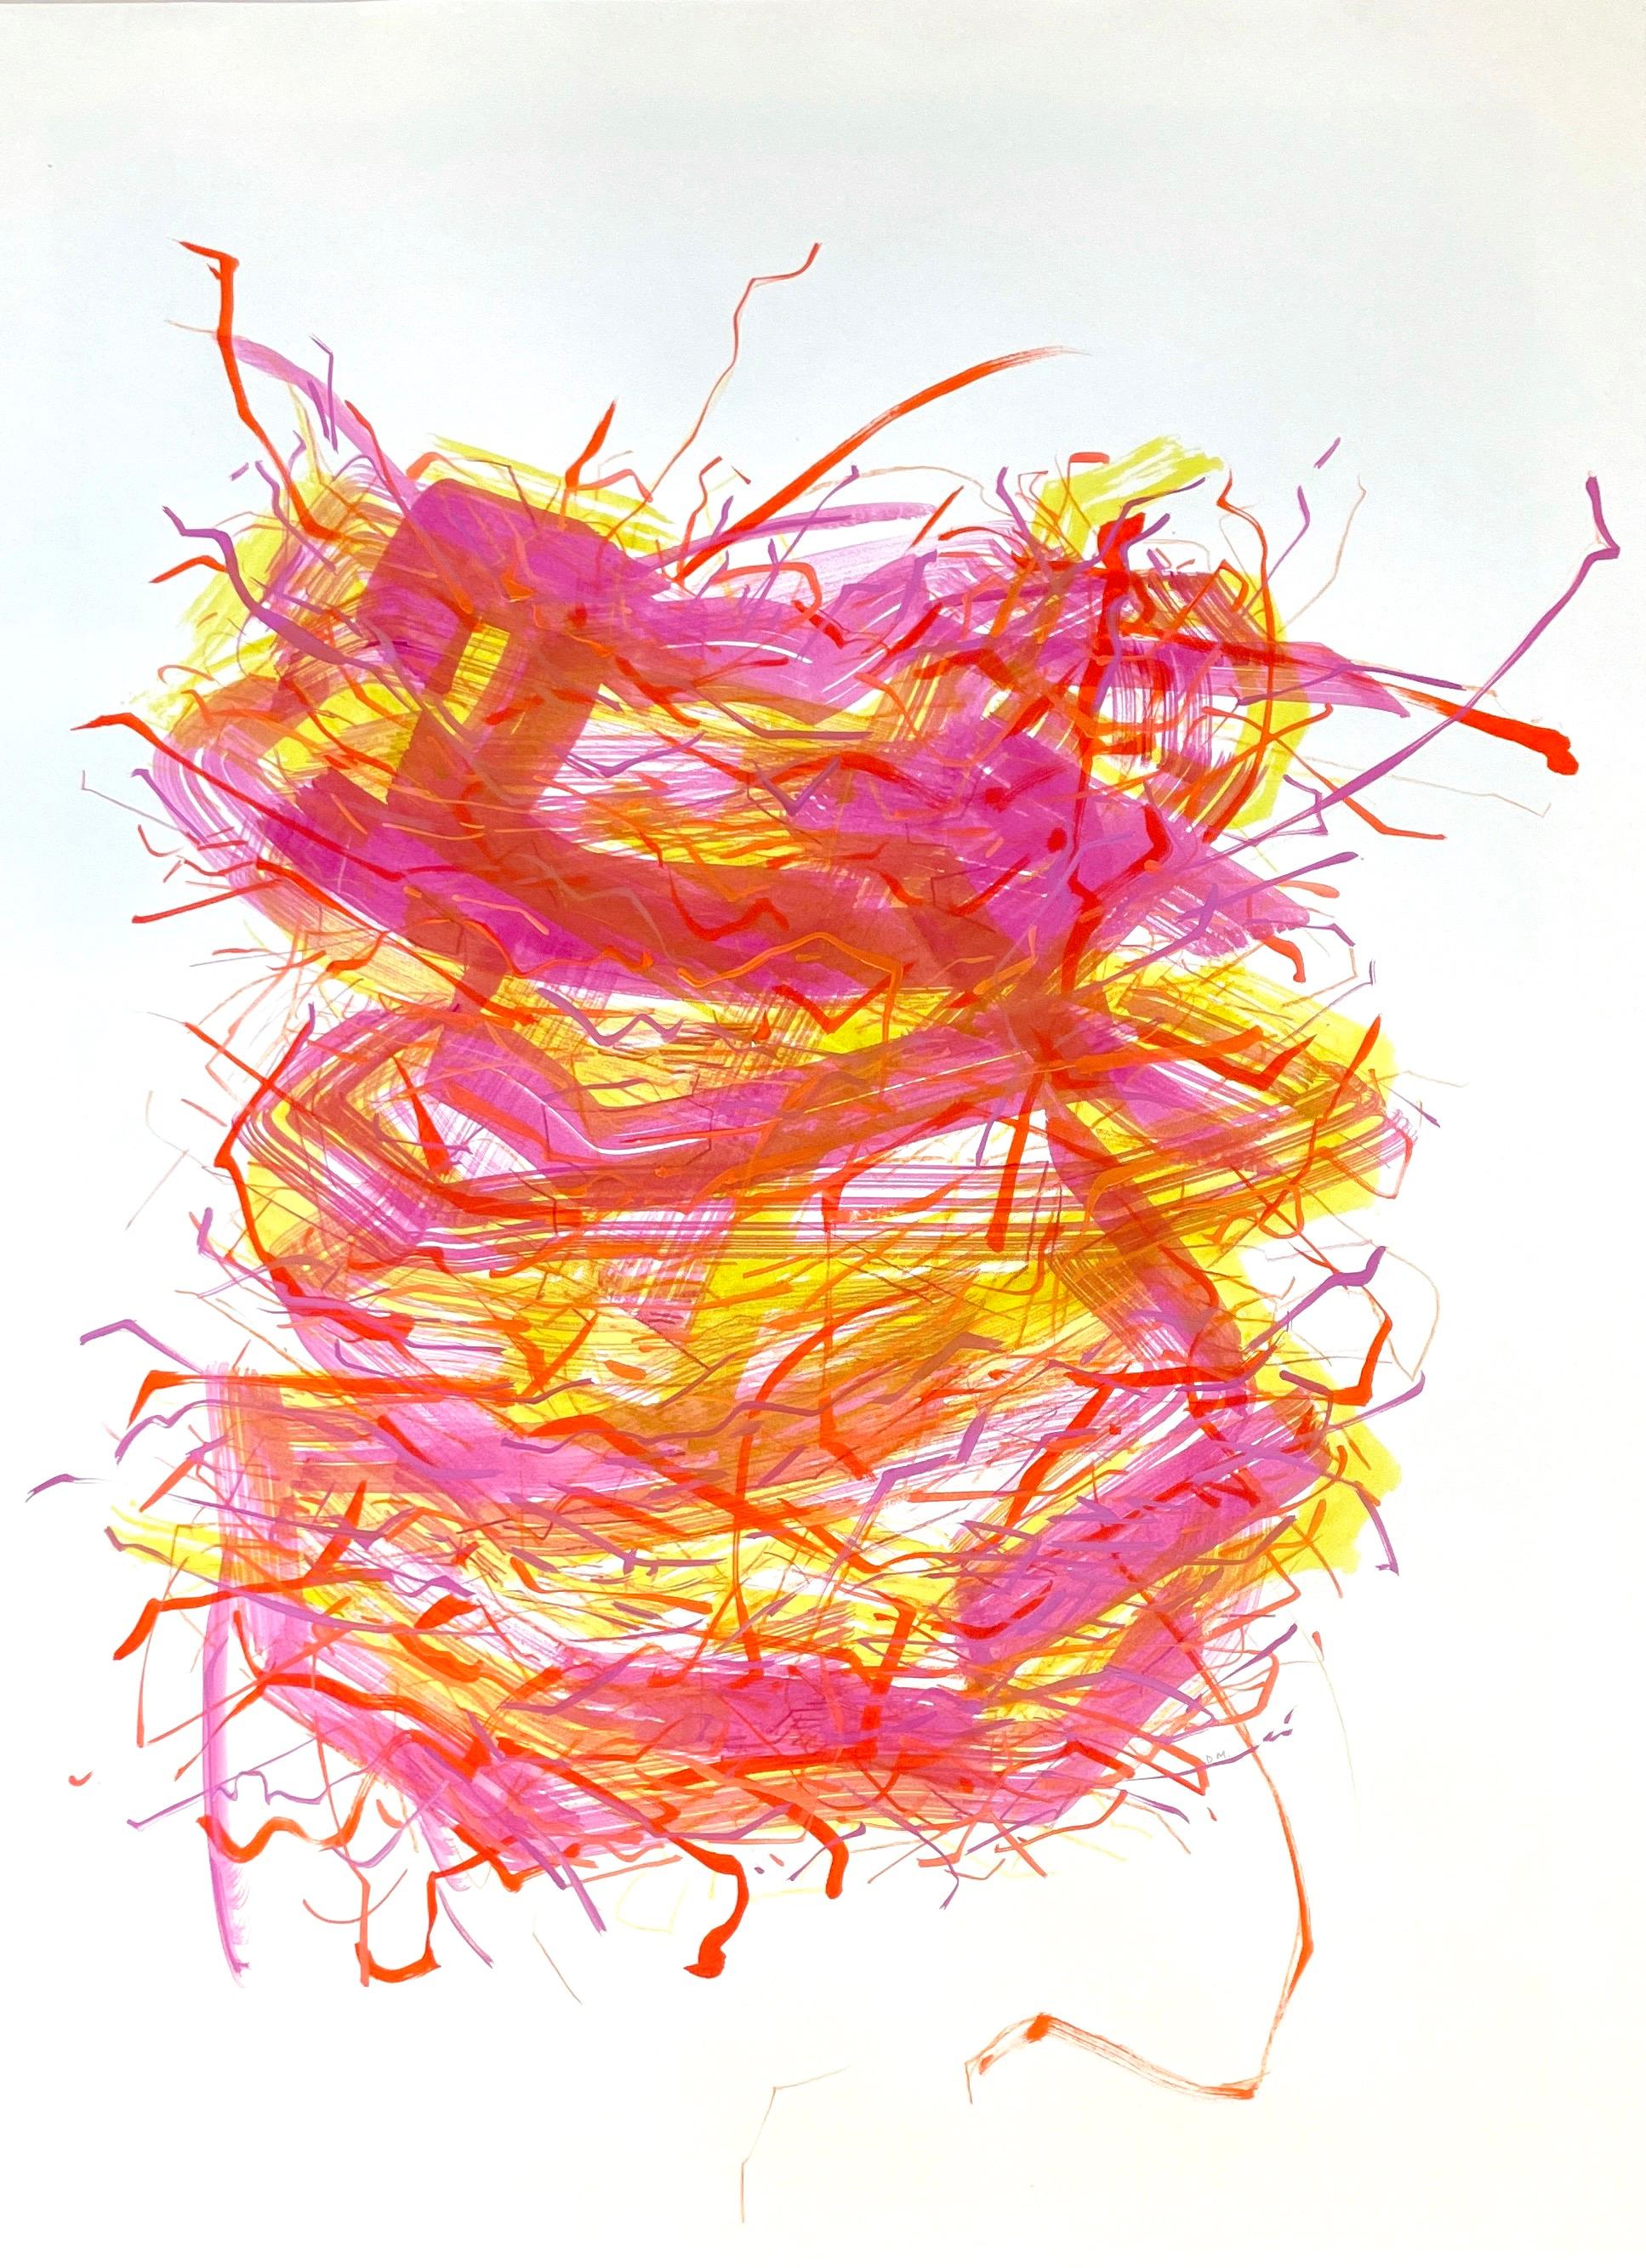 Deirdre Murphy Abstract Painting – Nest Tower II: Originalgemälde auf Papier mit abstraktem Vogel nest in Orange und Rosa